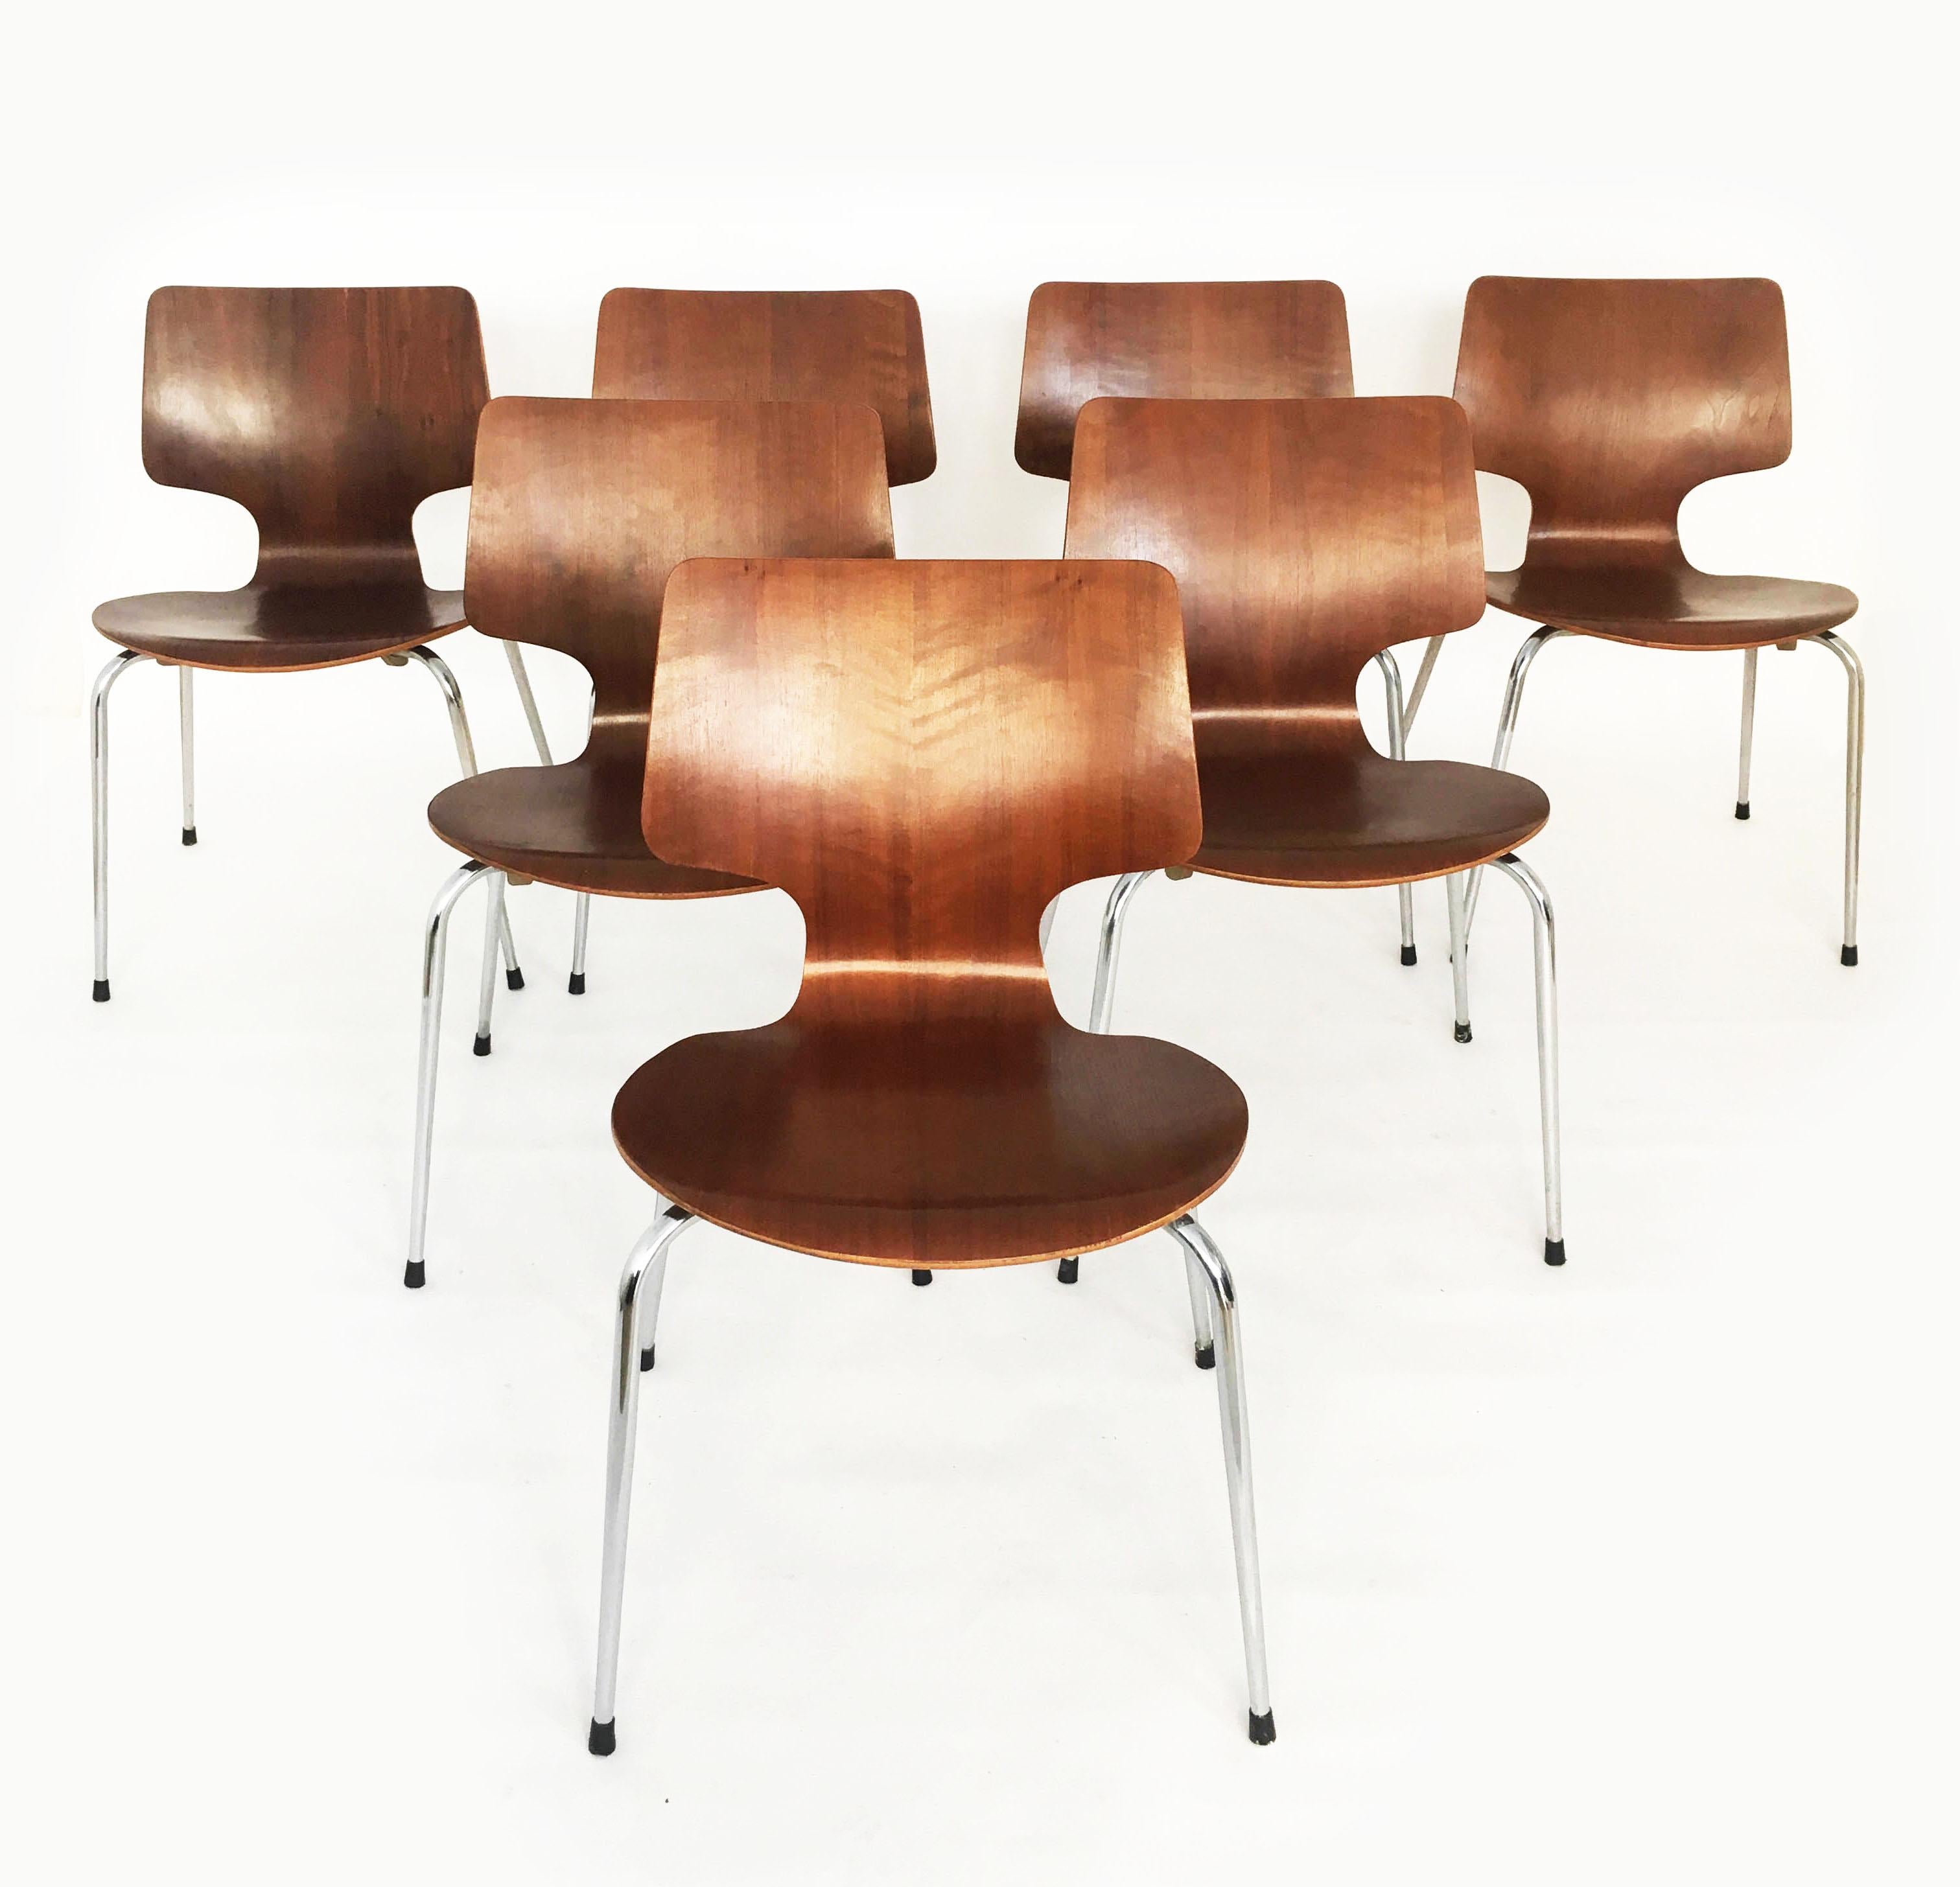 Danish Modern Teak Dining Chairs, Set of Seven, Denmark 1960s.